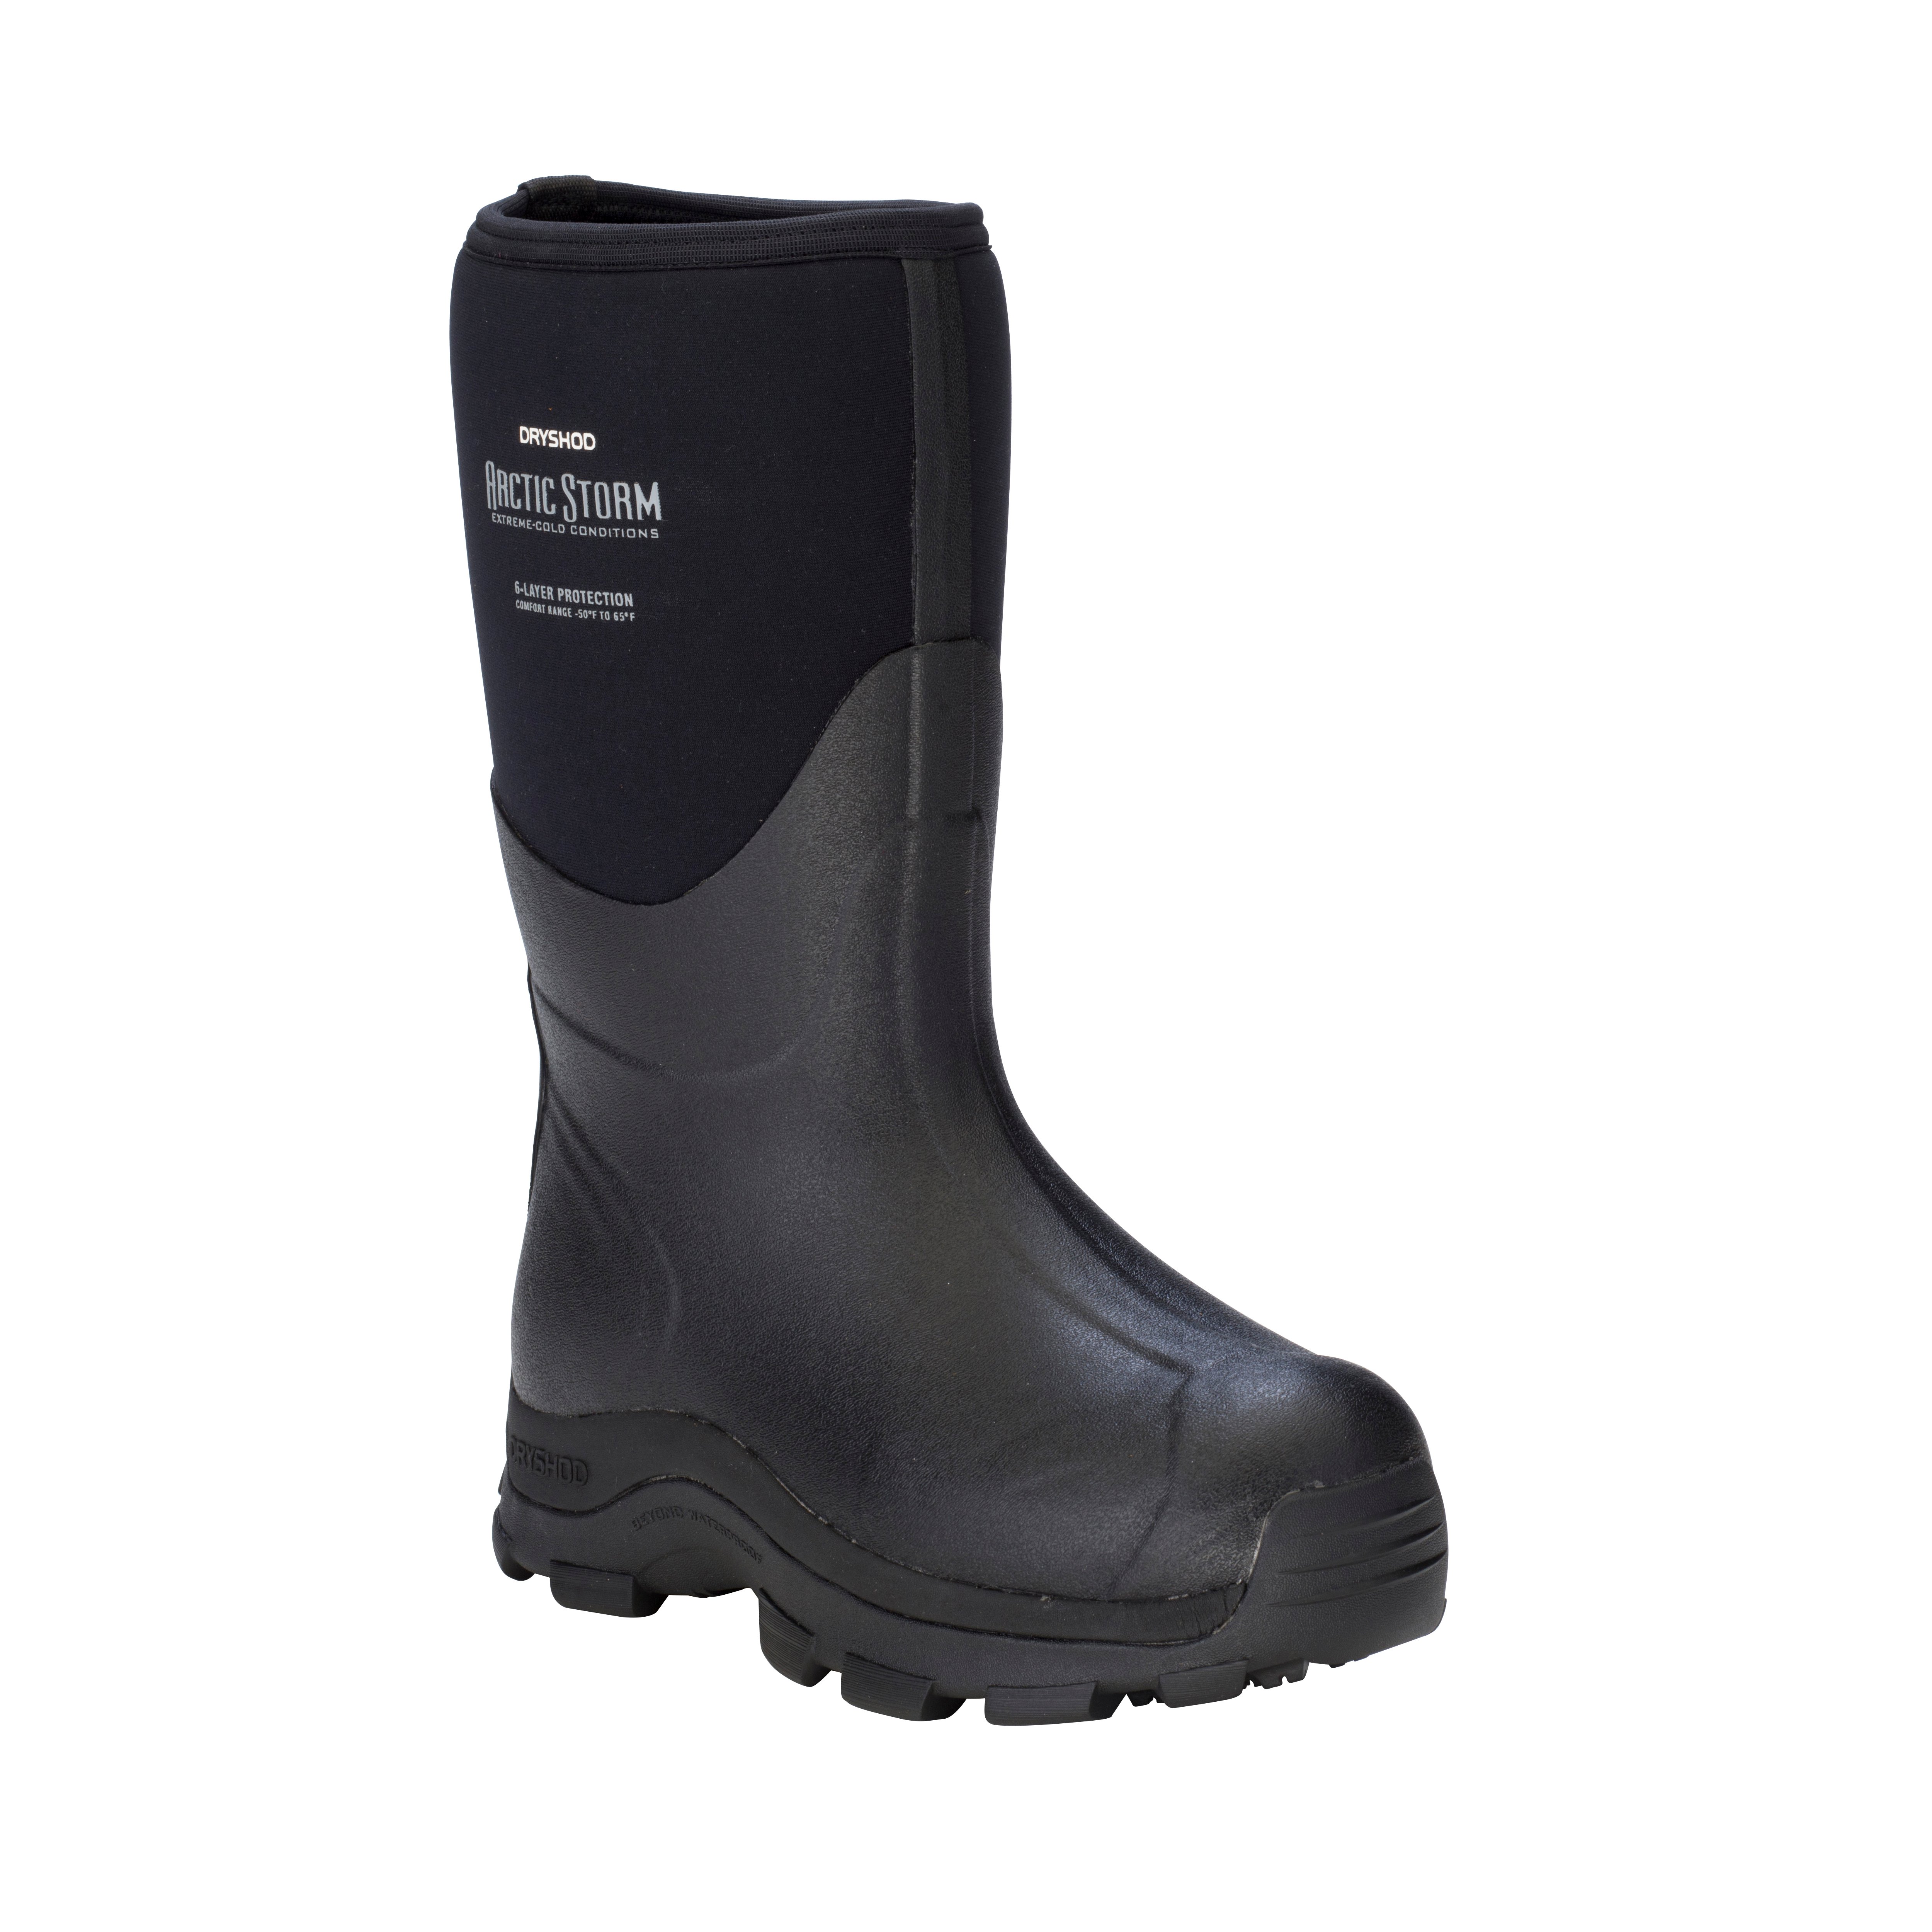 Arctic Storm Men's Mid – Dryshod Waterproof Boots